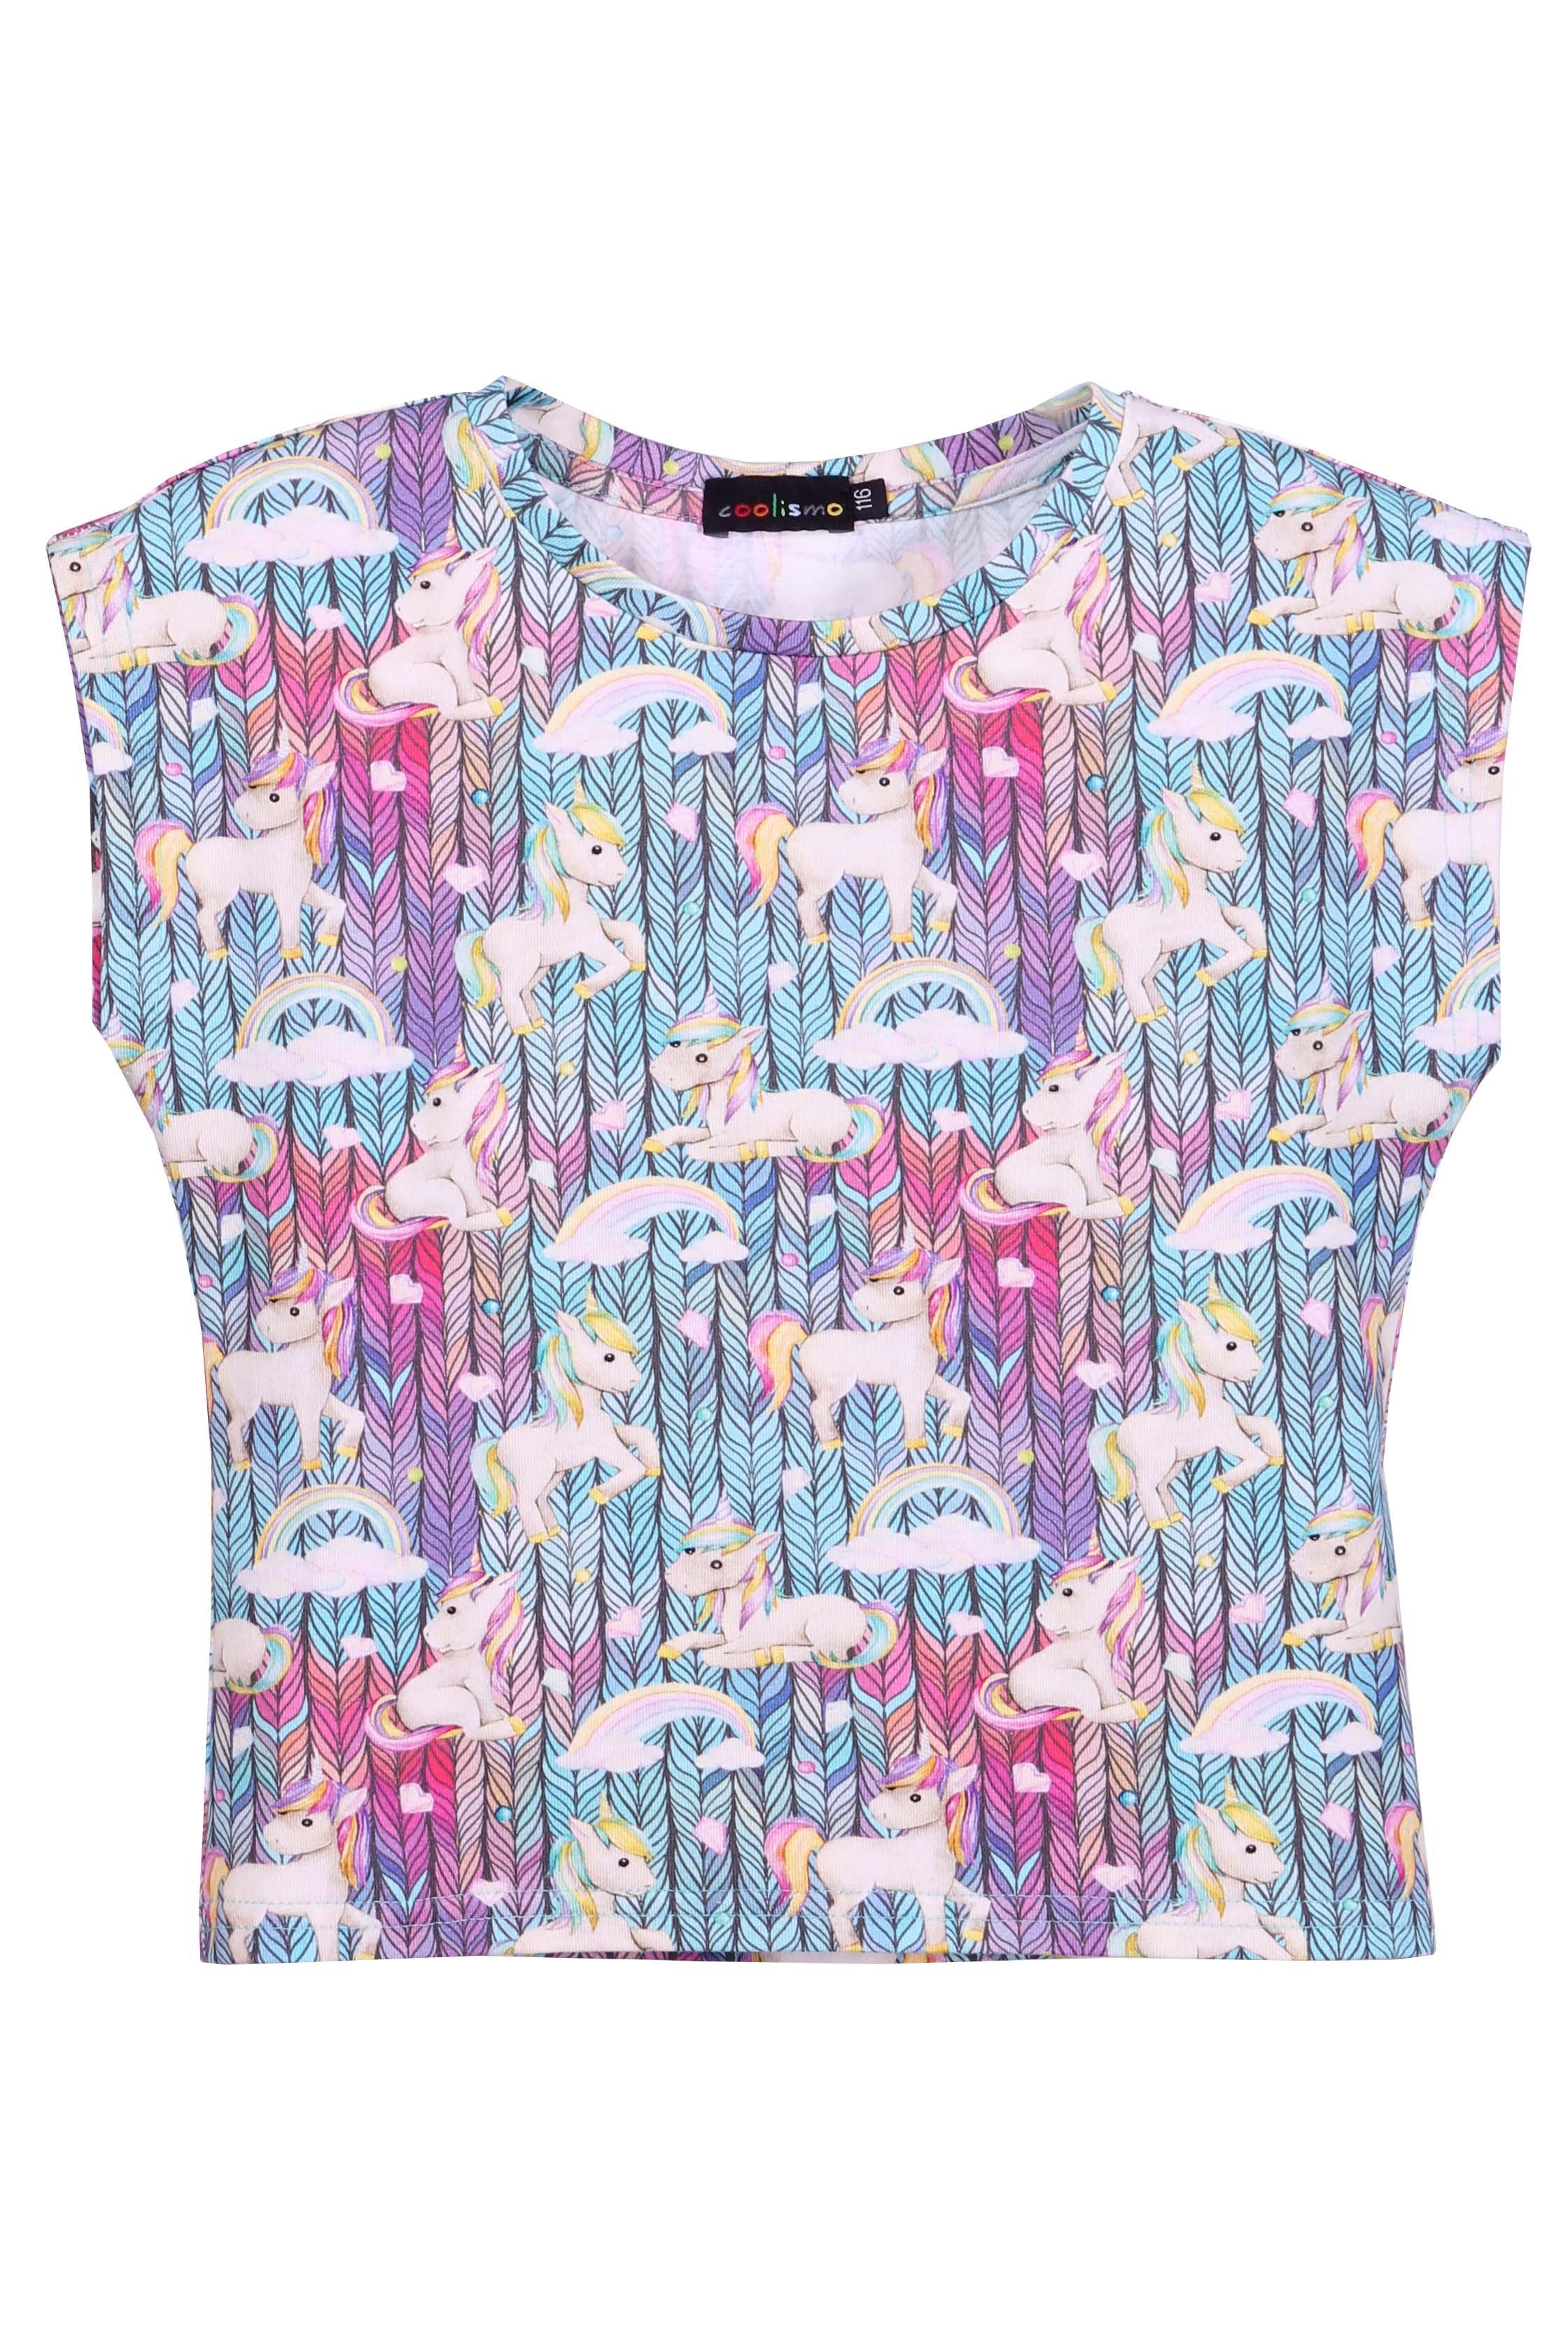 T-Shirt Einhorn coolismo Rundhalsausschnitt, Mädchen mit T-Shirt Pferdchen Alloverprint, Baumwolle